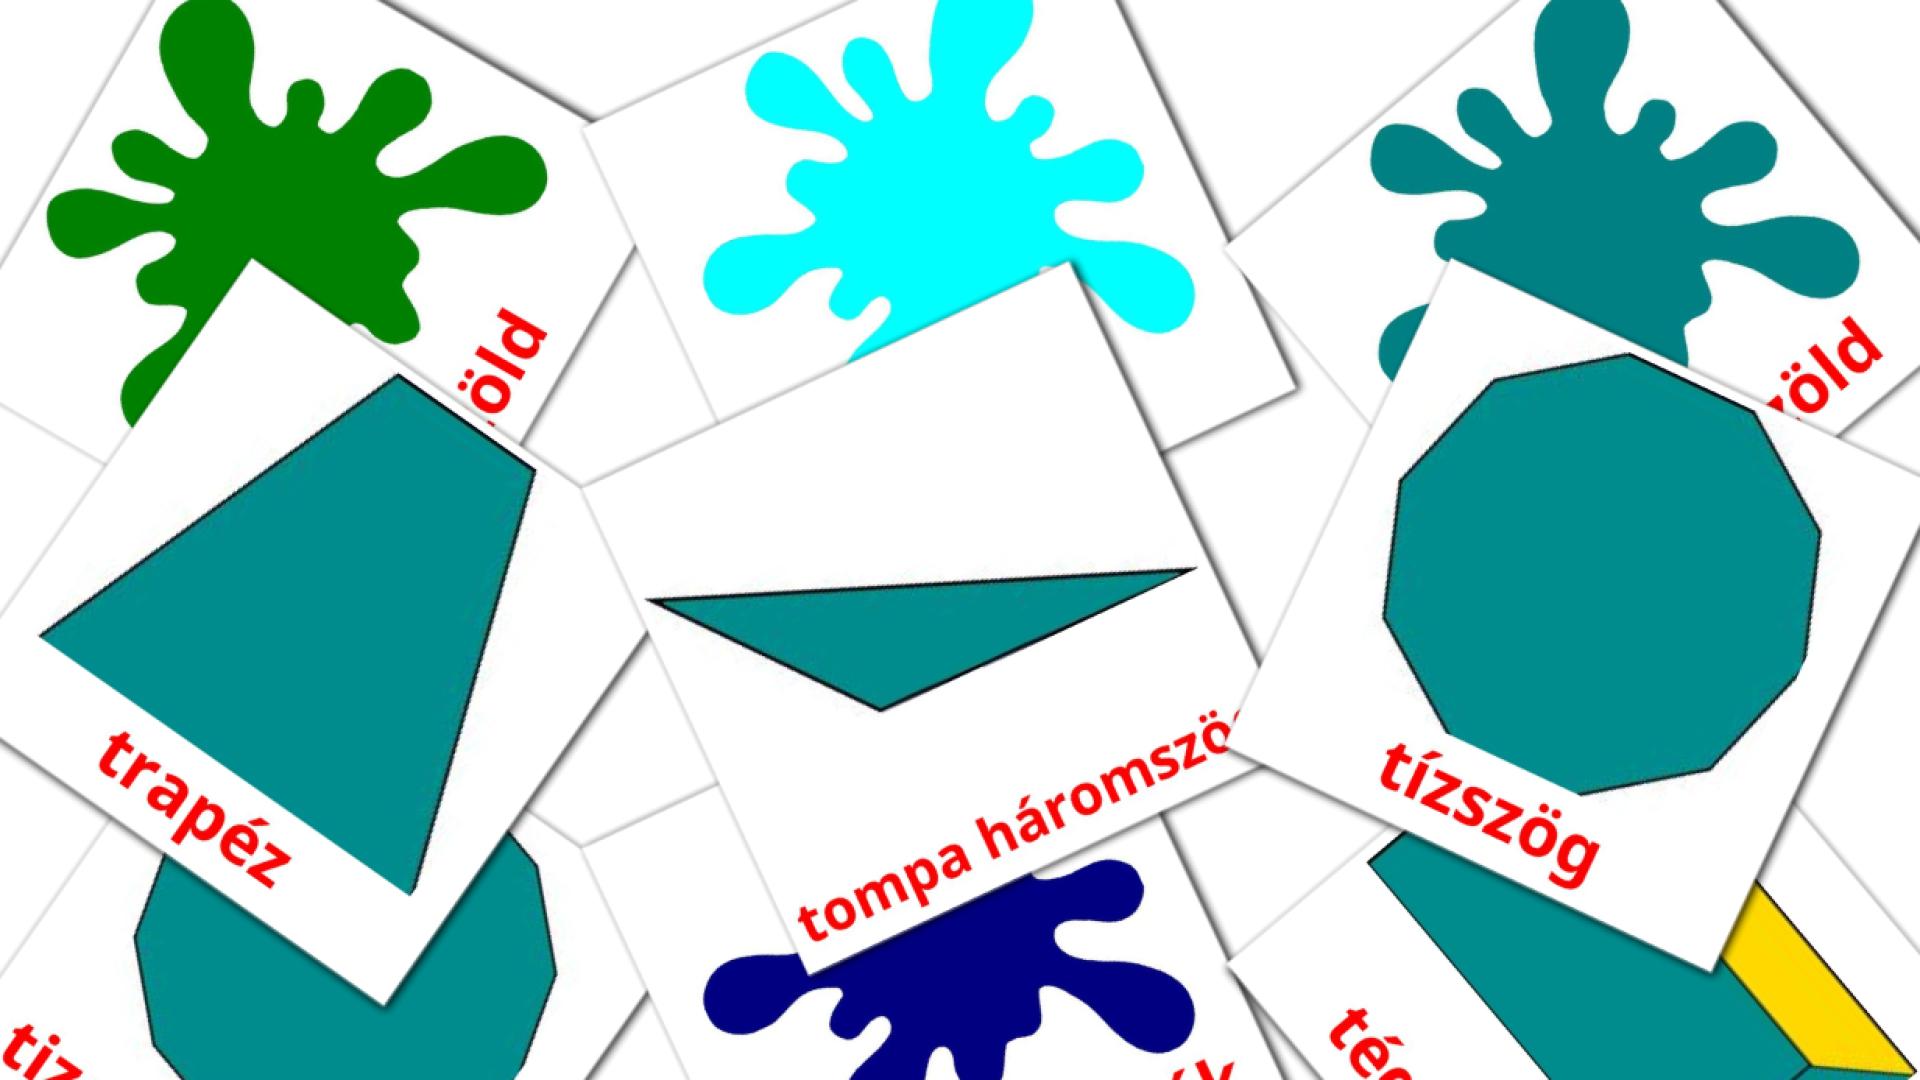 Карточки Домана formák на венгерском языке